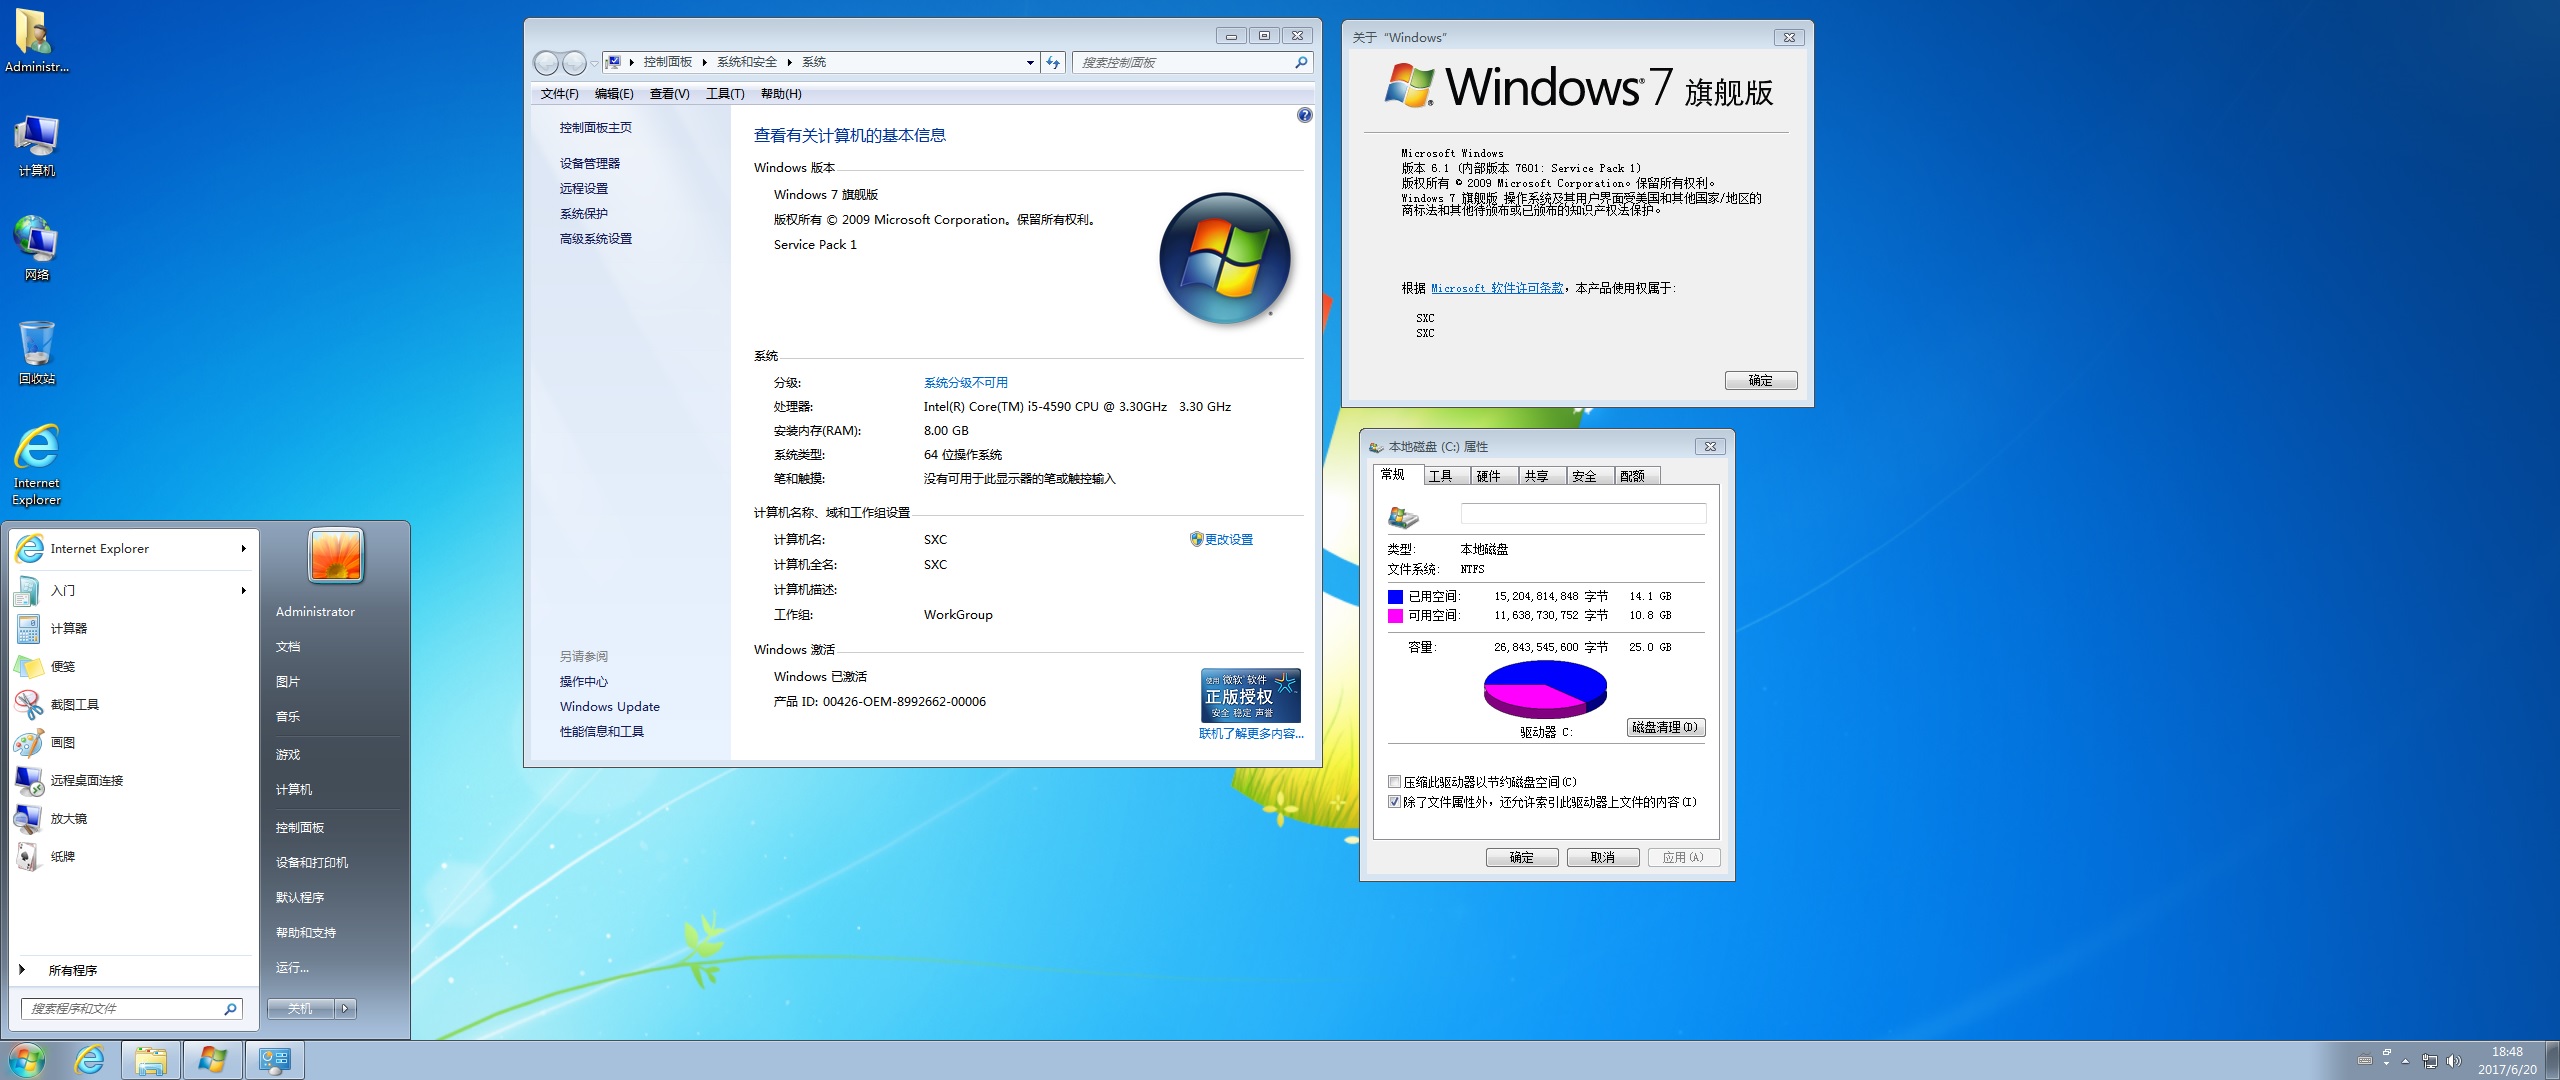 【溯汐潮】Windows 7 Ultimate X64 X86 年中版修复版 双版本双地址 喜欢哪个用哪个